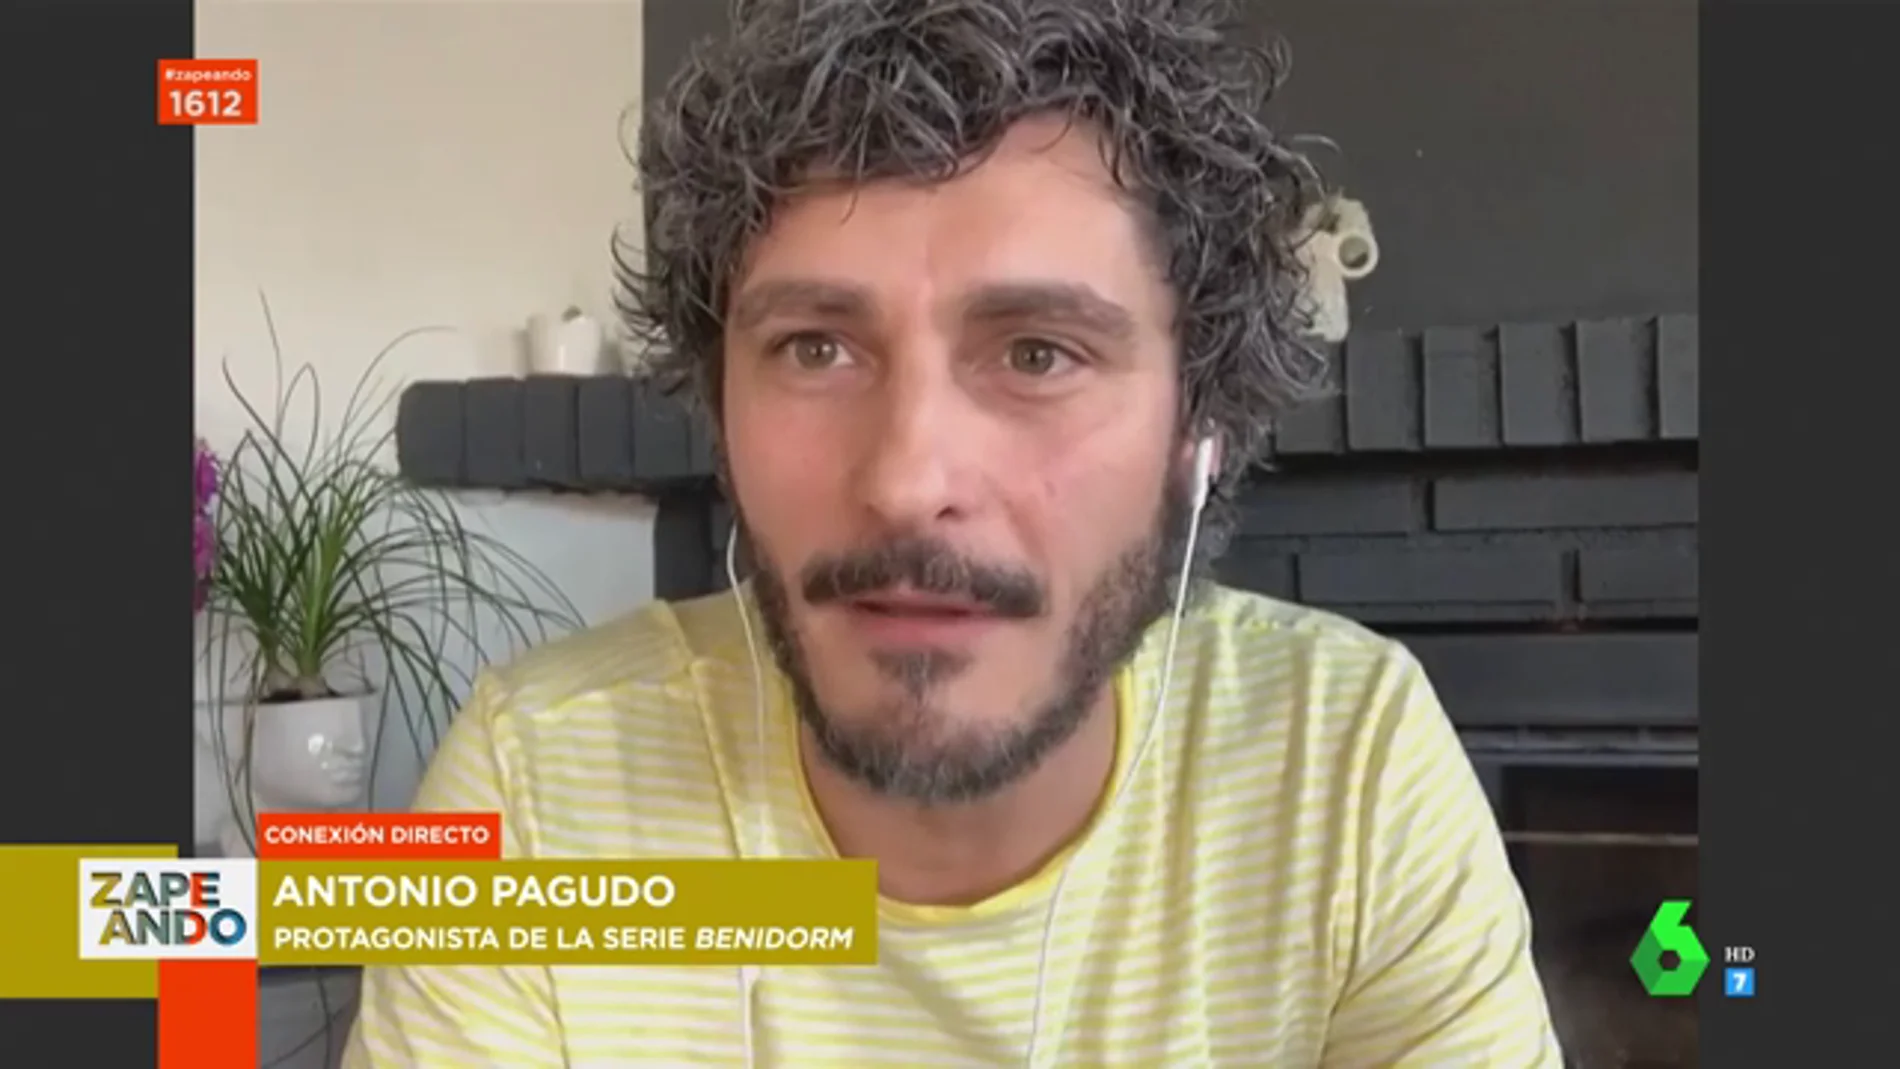 Antonio Pagudo se confiesa en Zapeando: "Me busco en Google para ver si se habla de mí"